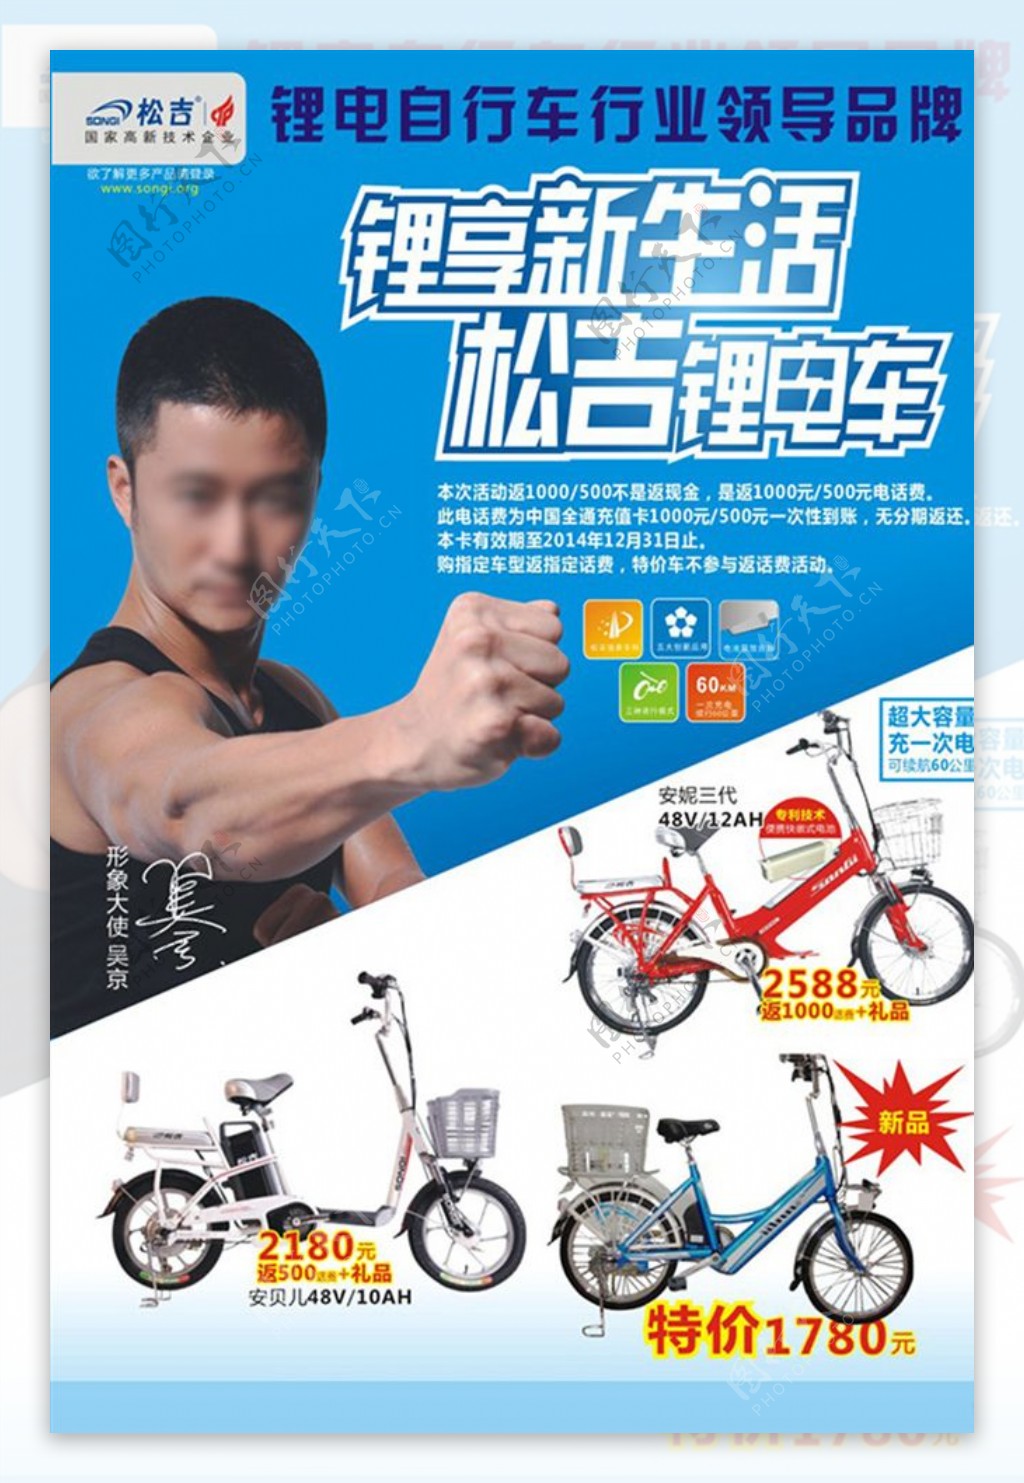 松吉电动车广告宣传单海报